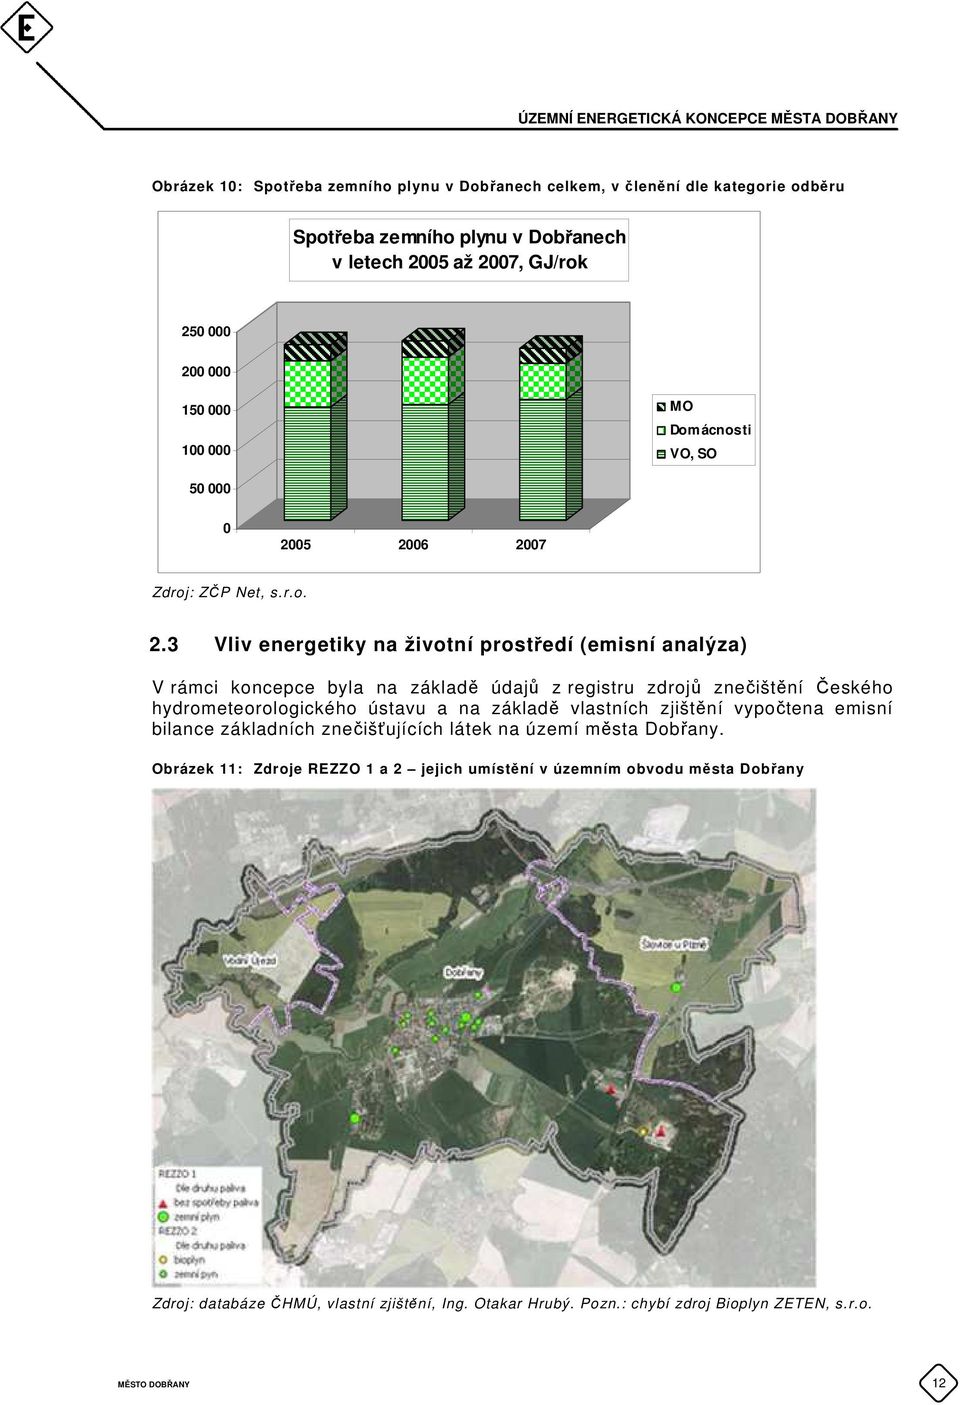 05 2006 2007 Zdroj: ZČP Net, s.r.o. 2.3 Vliv energetiky na životní prostředí (emisní analýza) V rámci koncepce byla na základě údajů z registru zdrojů znečištění Českého